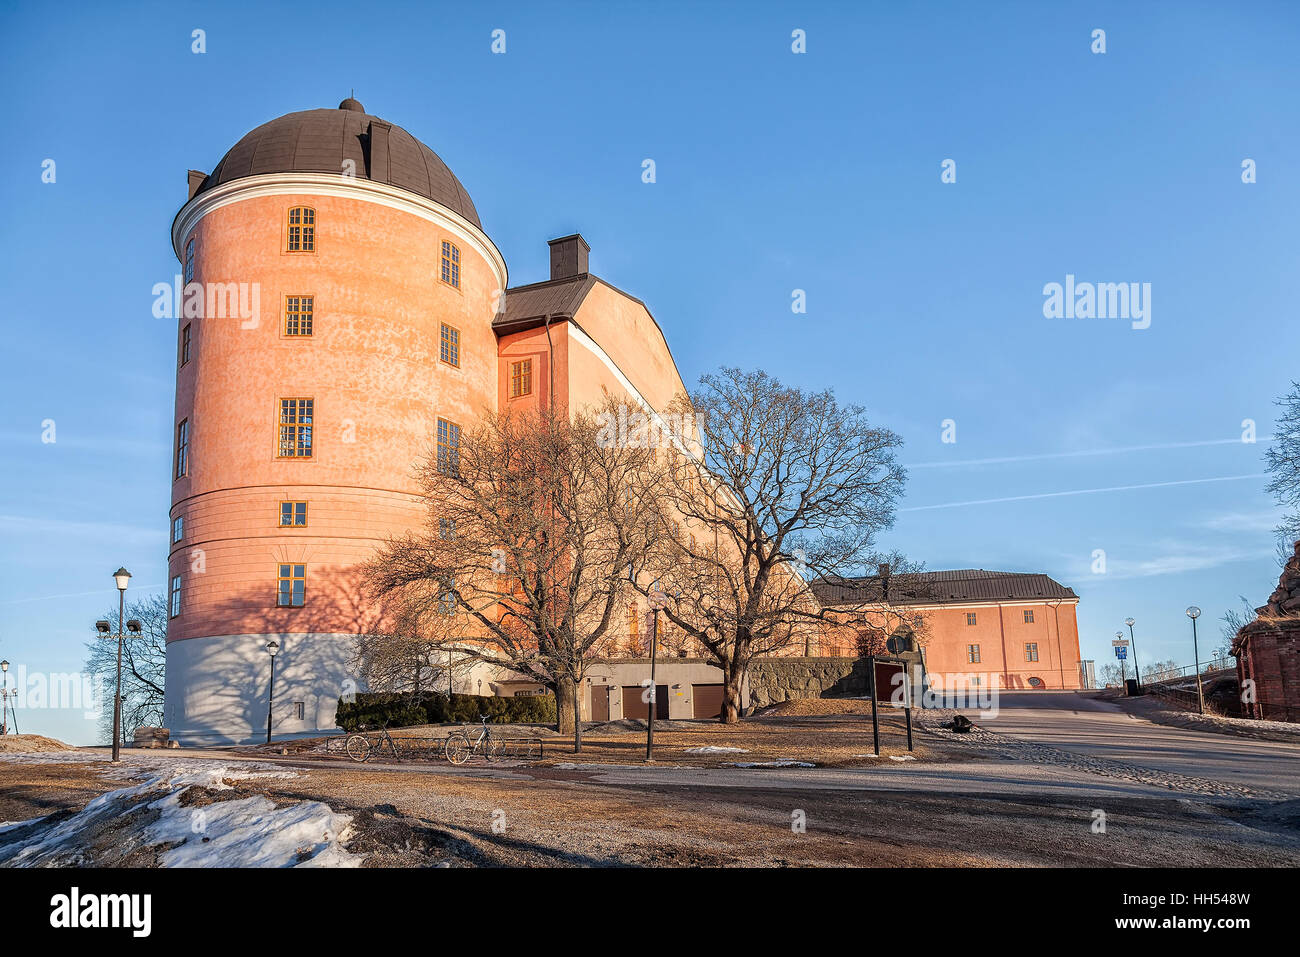 Bild der Burg aus dem 16. Jahrhundert in Uppsala, Schweden. Stockfoto